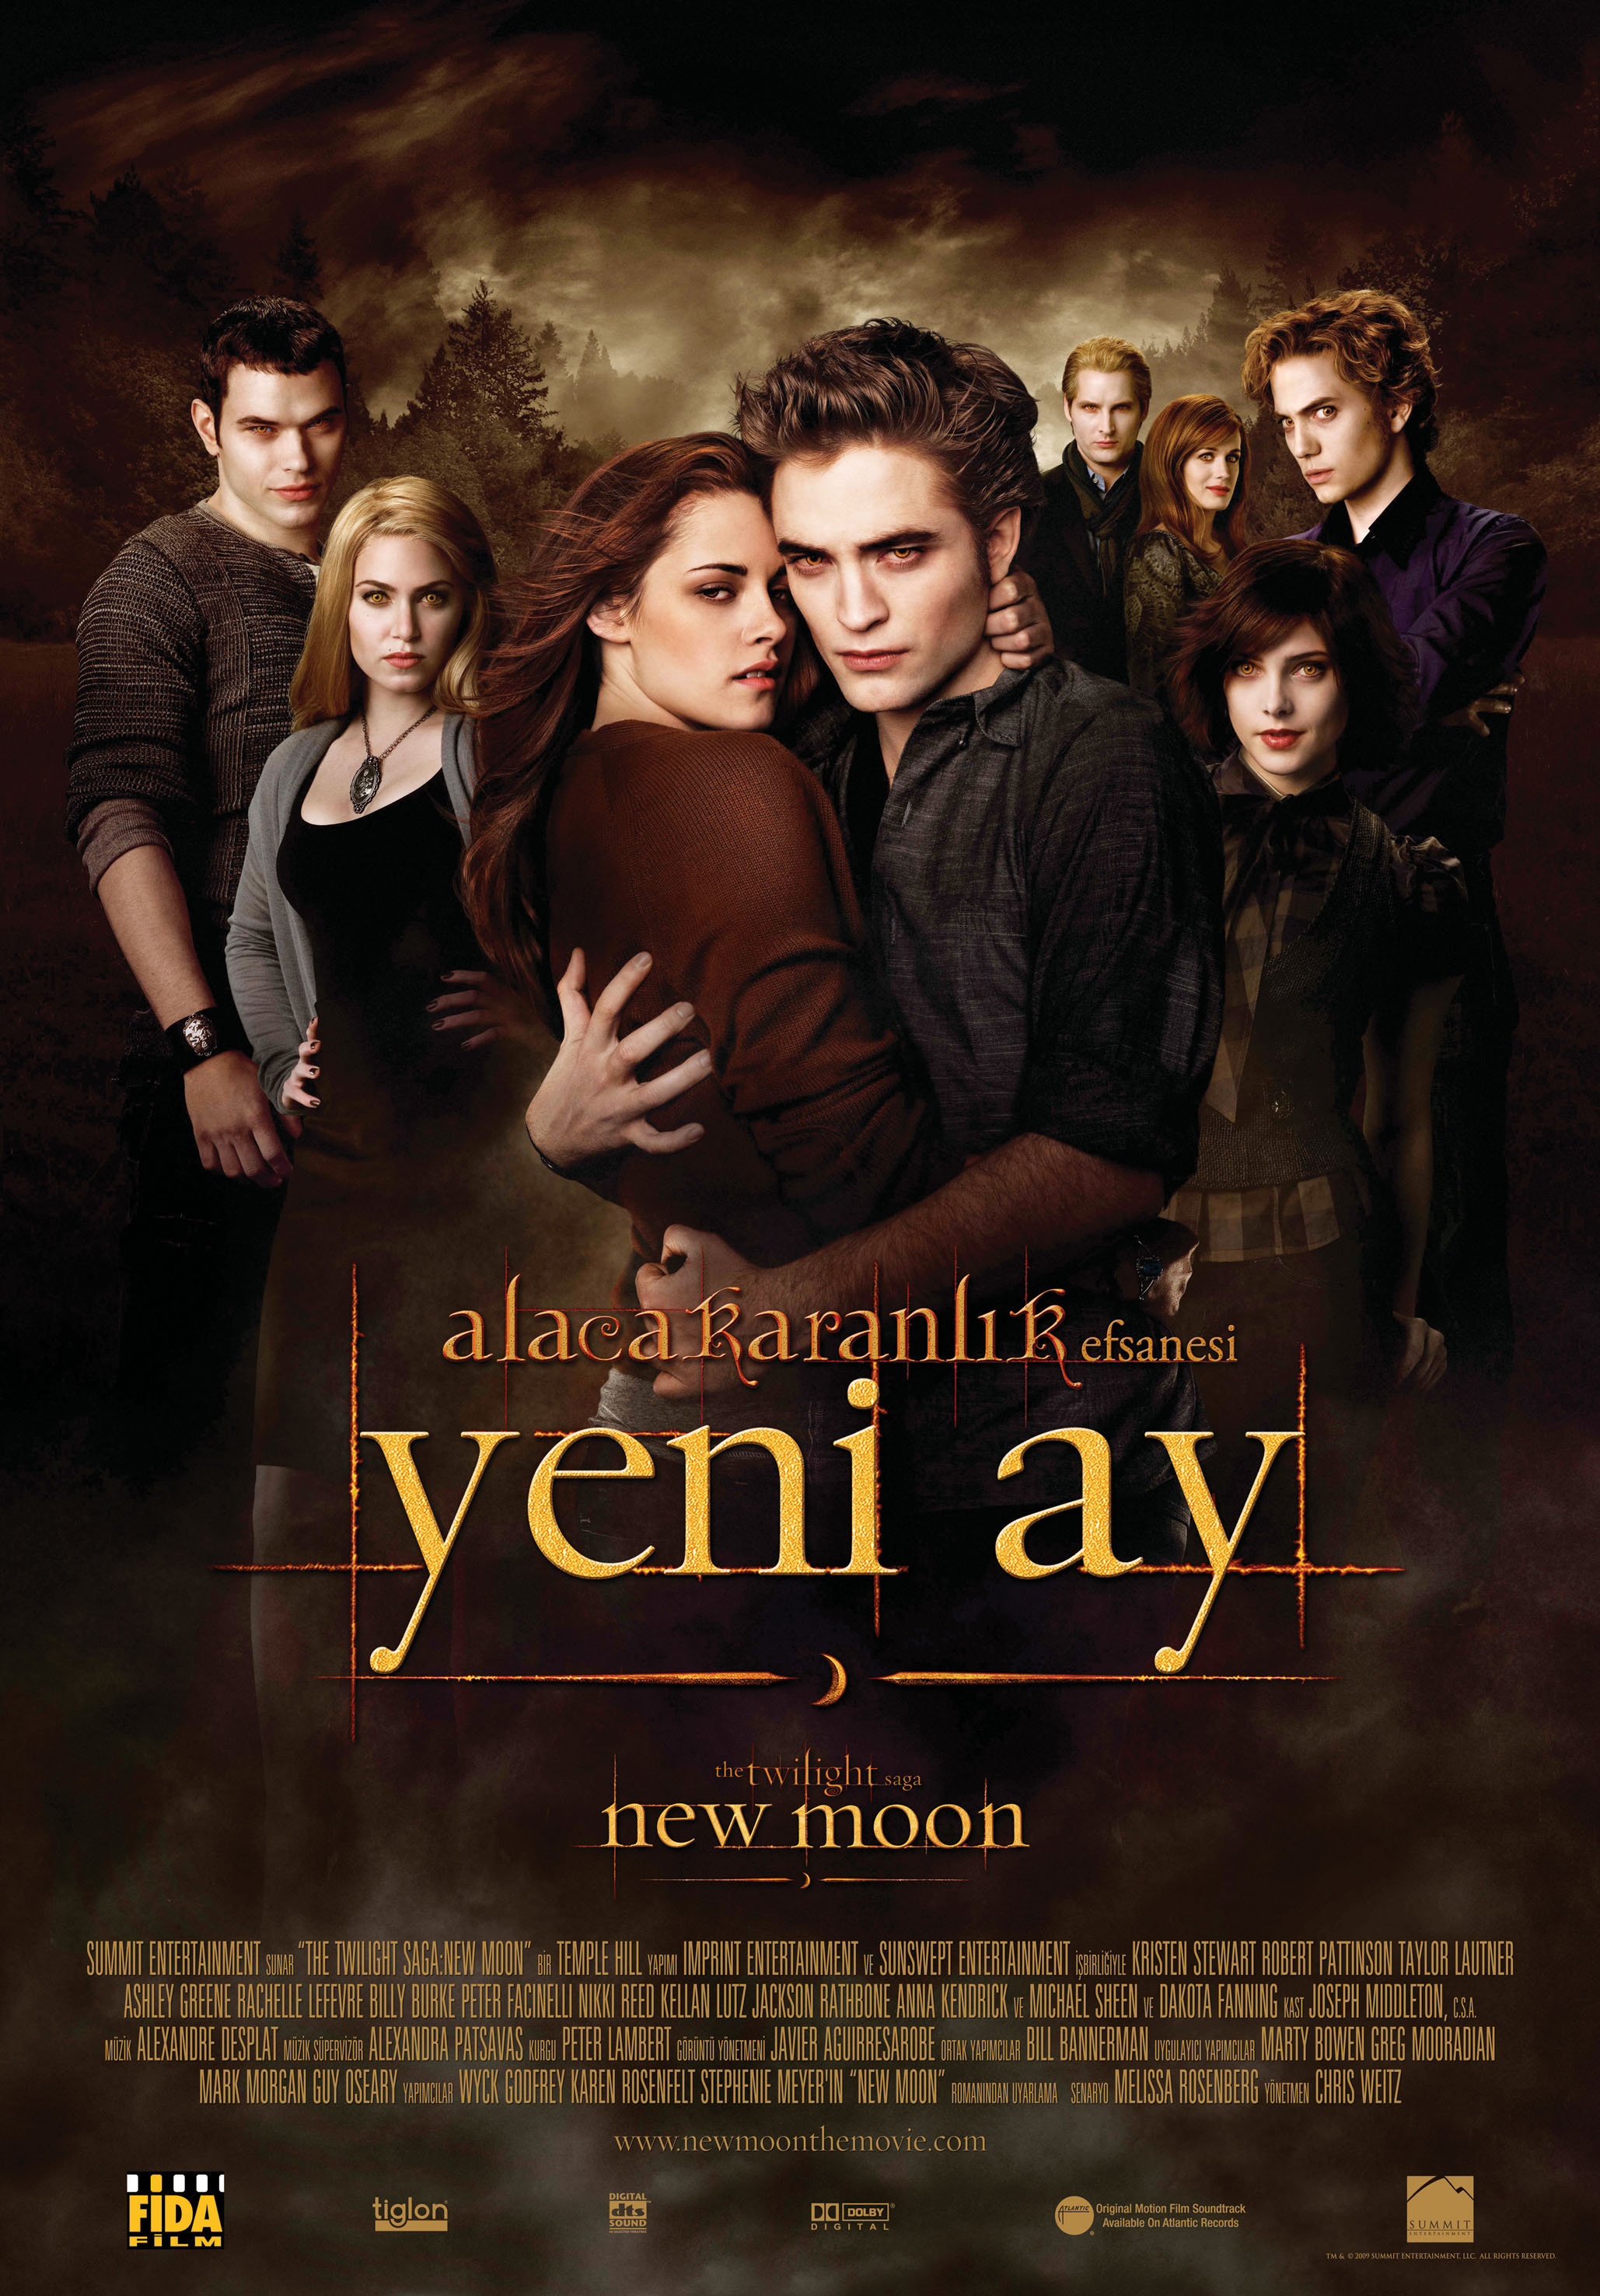 Alacakaranlık Efsanesi Yeni Ay – The Twilight Saga New Moon 2009 Türkçe Dublaj izle